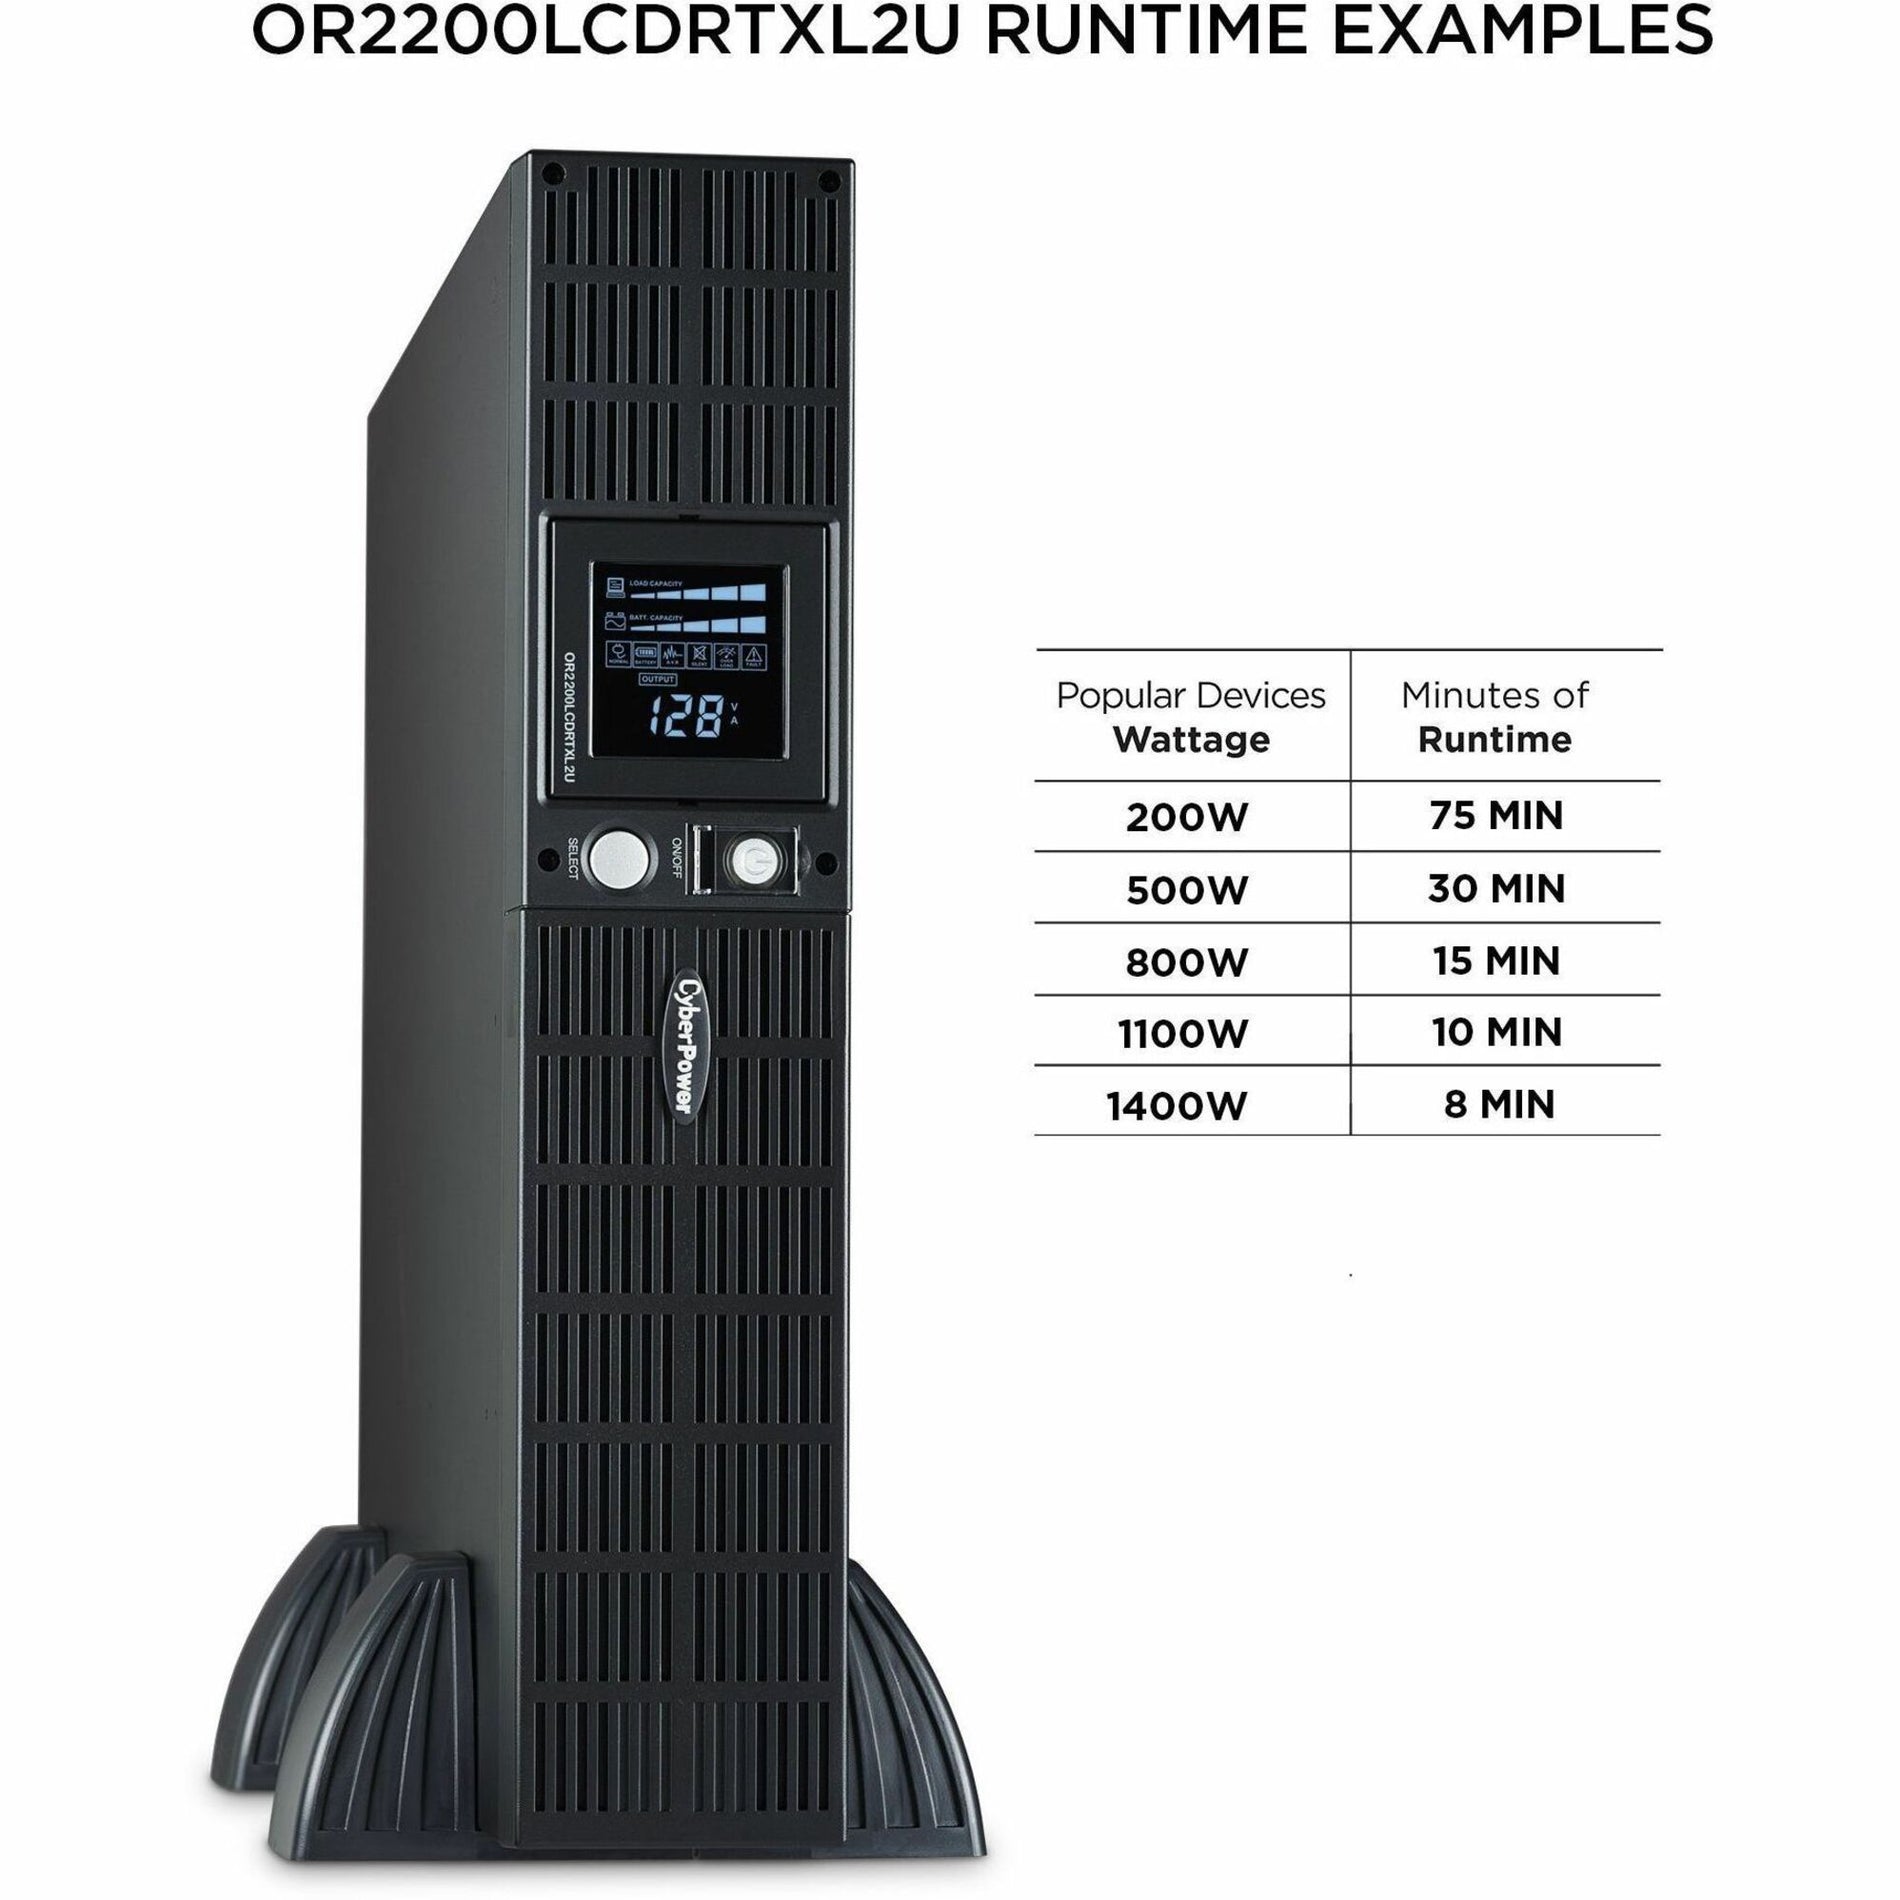 赛博动力 OR2200LCDRTXL2U 智能应用液晶显示 UPS 系统，2190 伏安 塔式/机架式 UPS 赛博动力